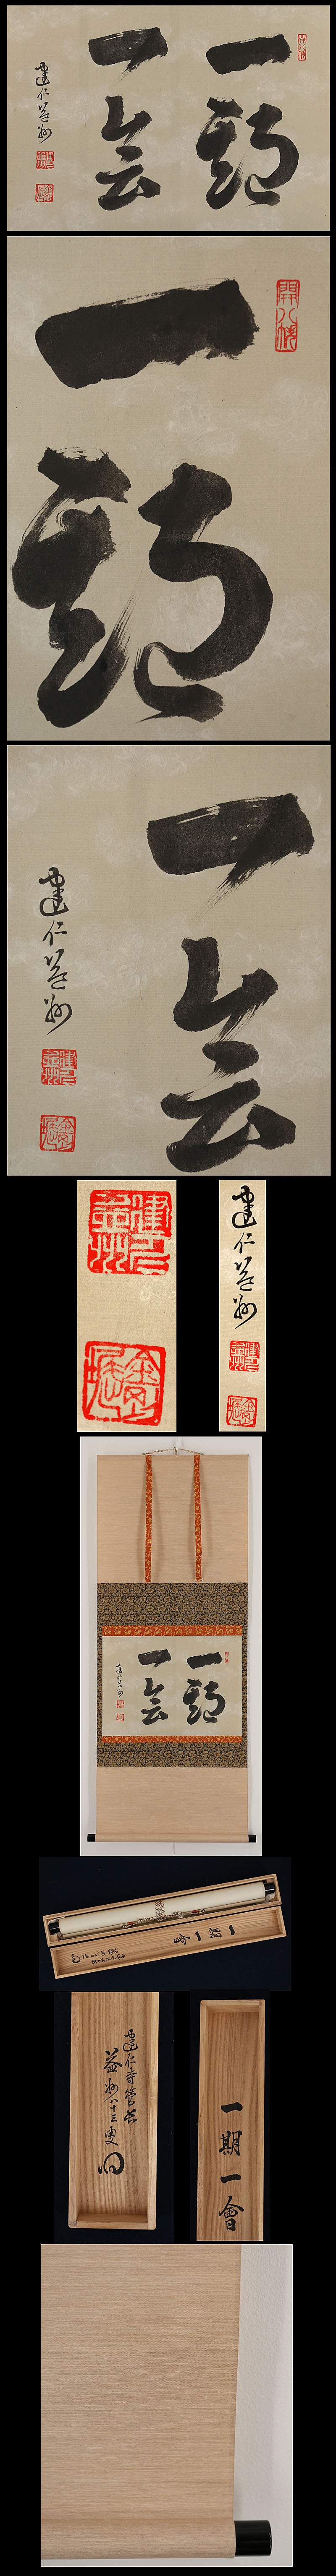 竹田益州 一期一会 共箱 | 古美術品・中国書画の買取・査定や掛軸の 